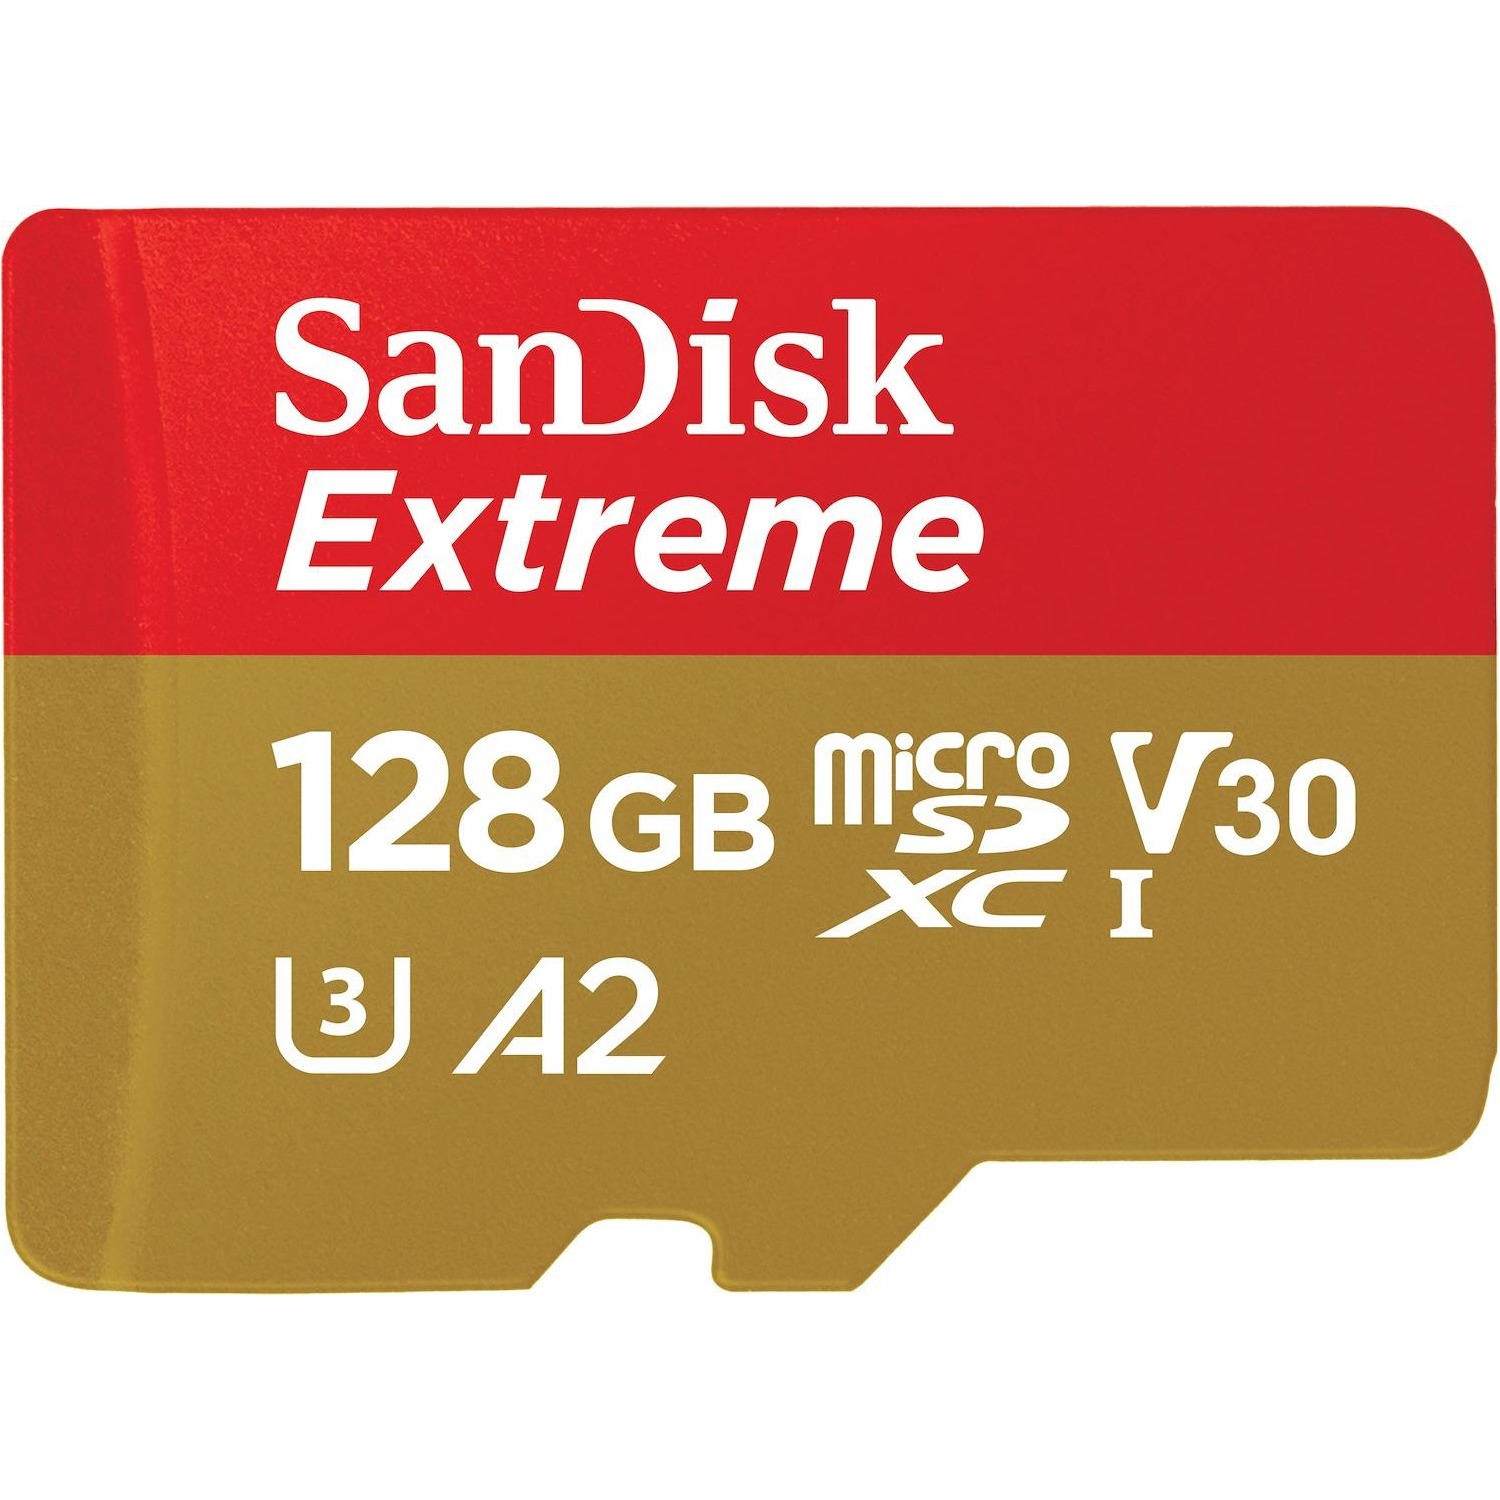 Immagine per MicroSD San Disk Extreme Mobile 128GB XC con      adattatore SD da DIMOStore